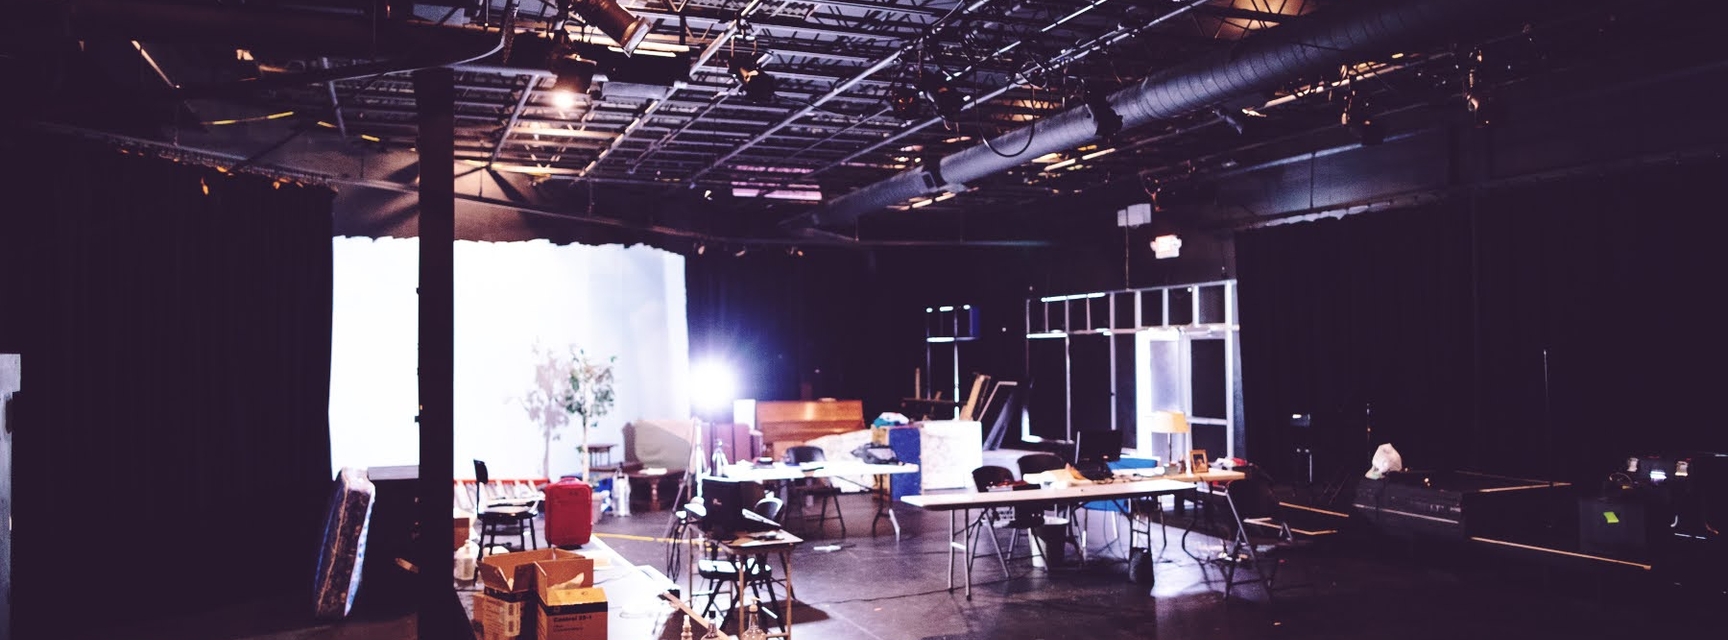 Pipe Dreams Studio Theatre